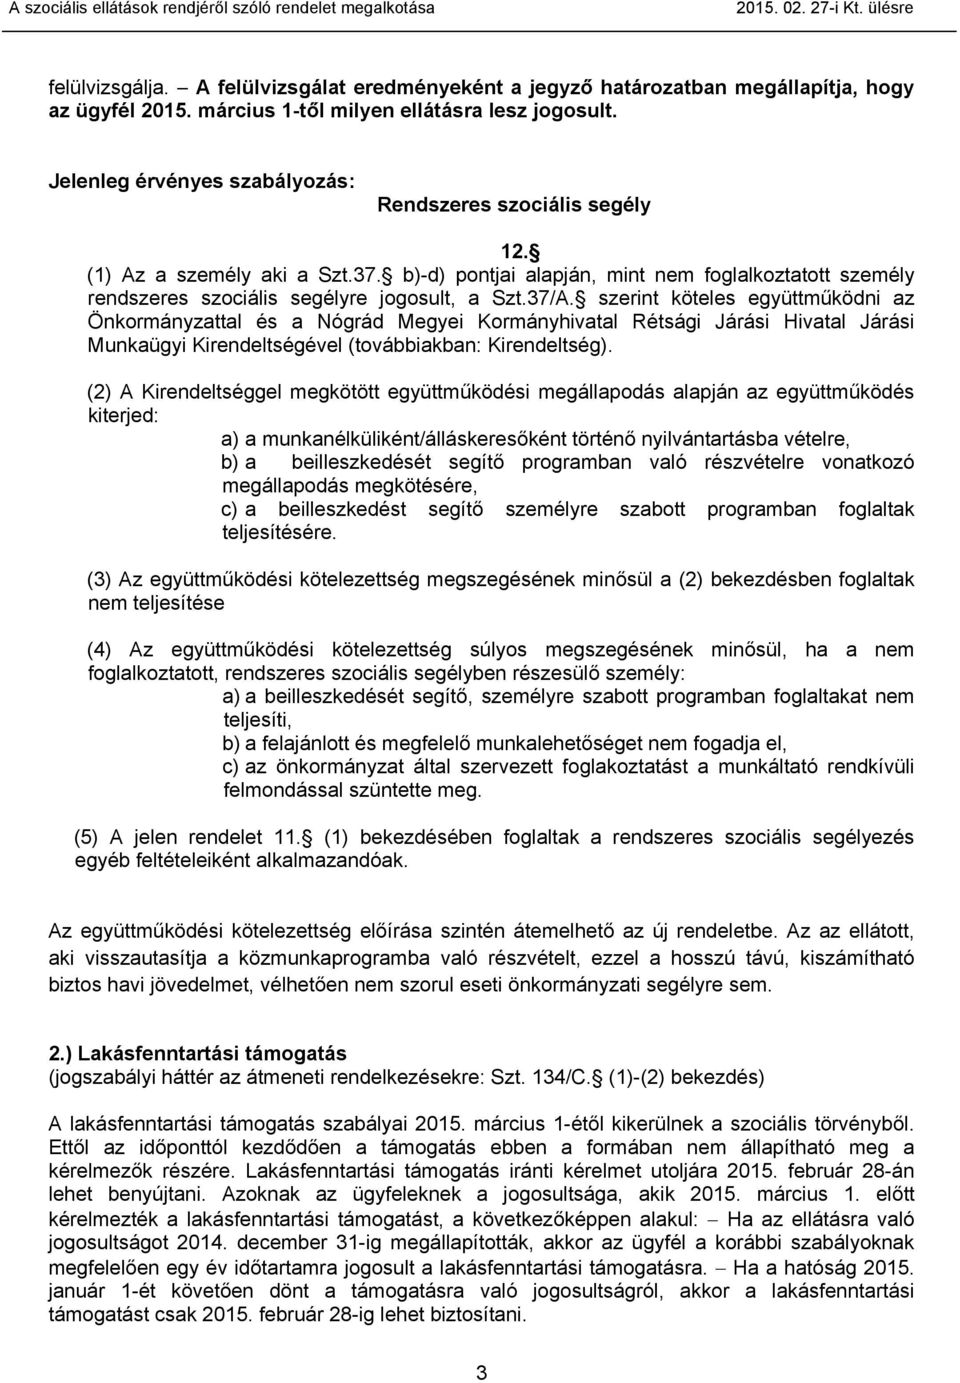 37/A. szerint köteles együttműködni az Önkormányzattal és a Nógrád Megyei Kormányhivatal Rétsági Járási Hivatal Járási Munkaügyi Kirendeltségével (továbbiakban: Kirendeltség).